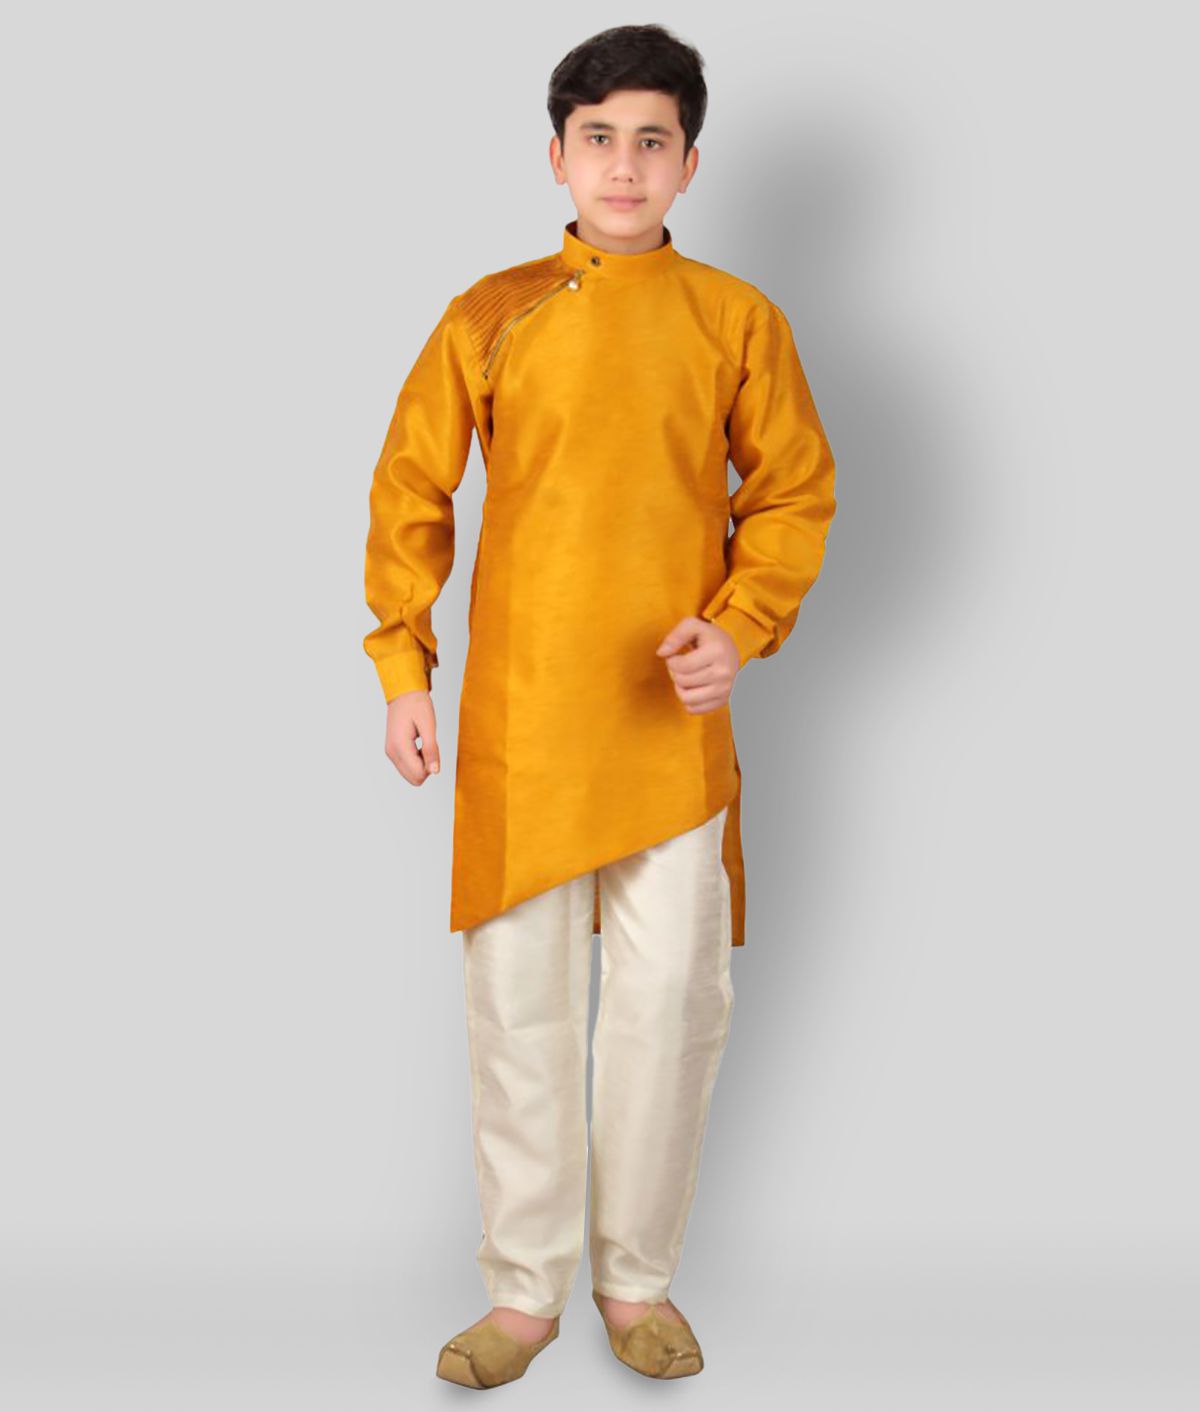     			Fourfolds Kids Indian Ethnic Wear Kurta Pyjama Set for Boys 710